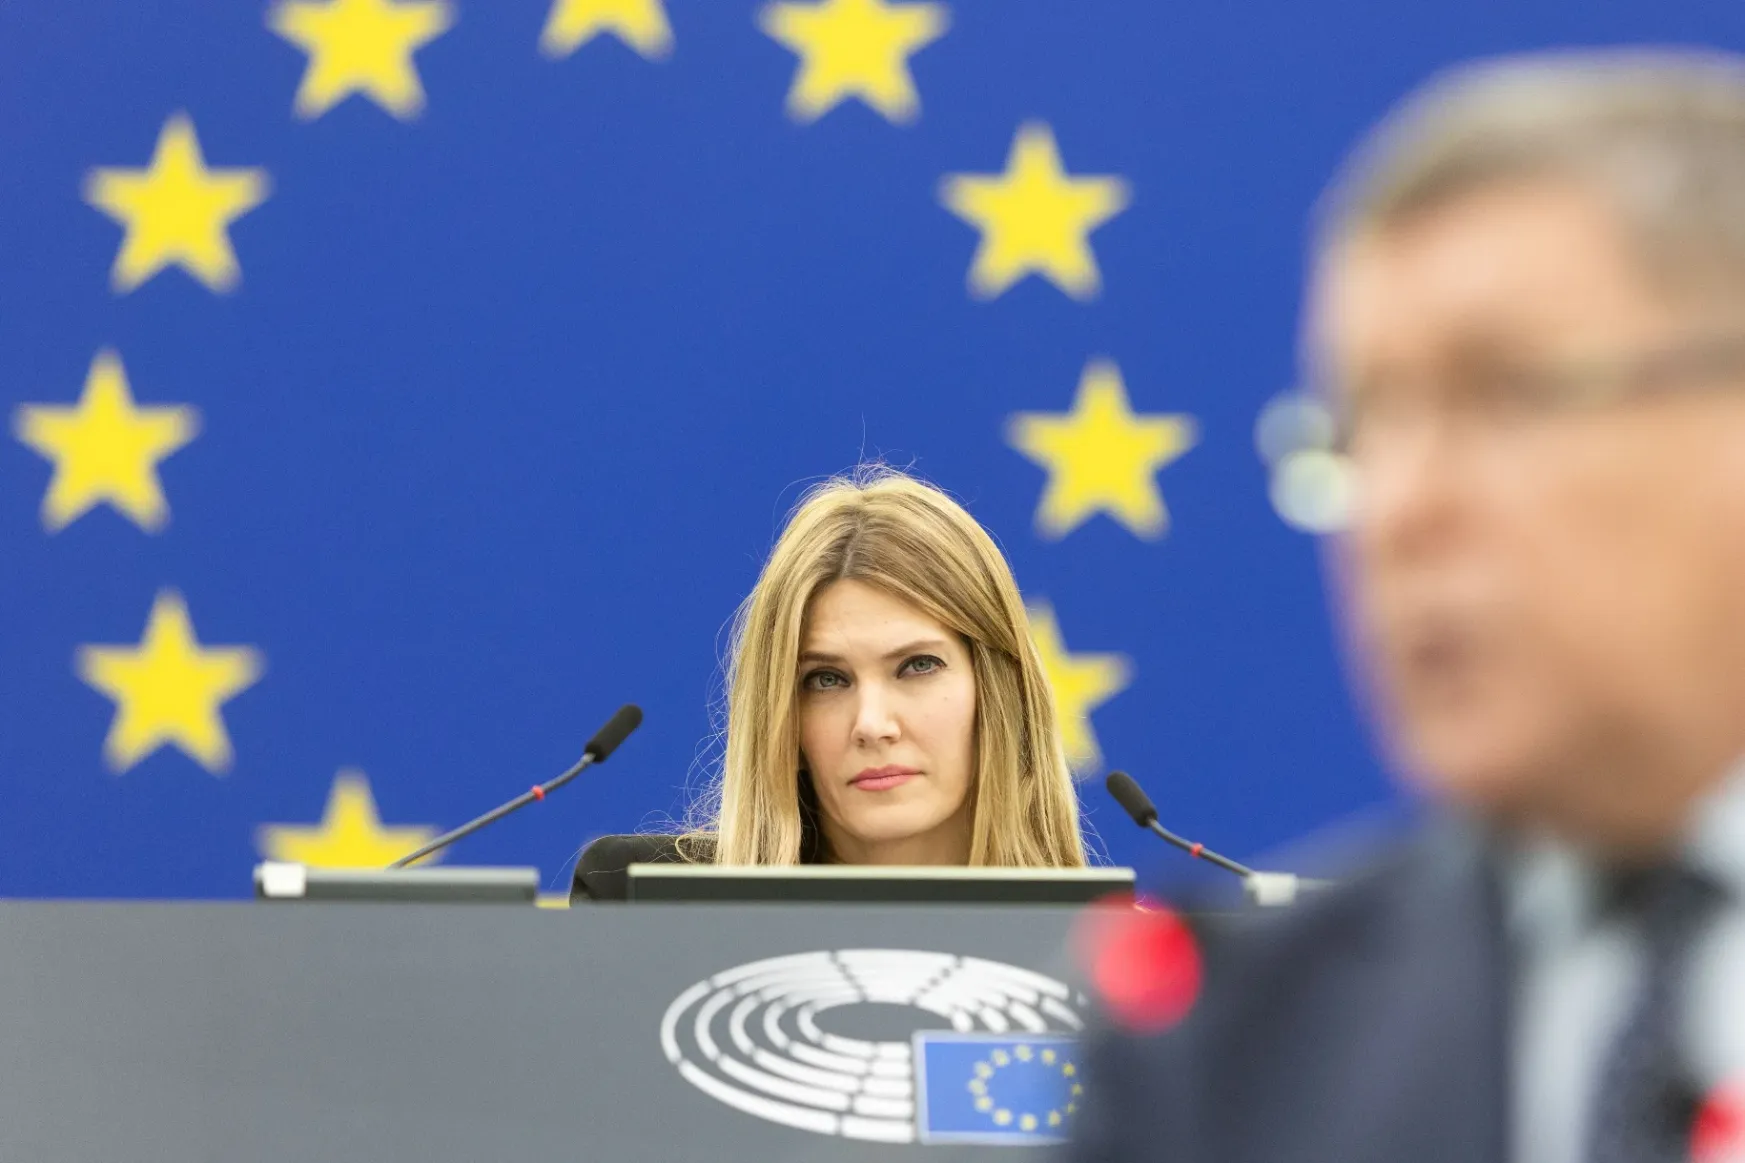 Beleremeghet az Európai Parlament a vesztegetési botrányba